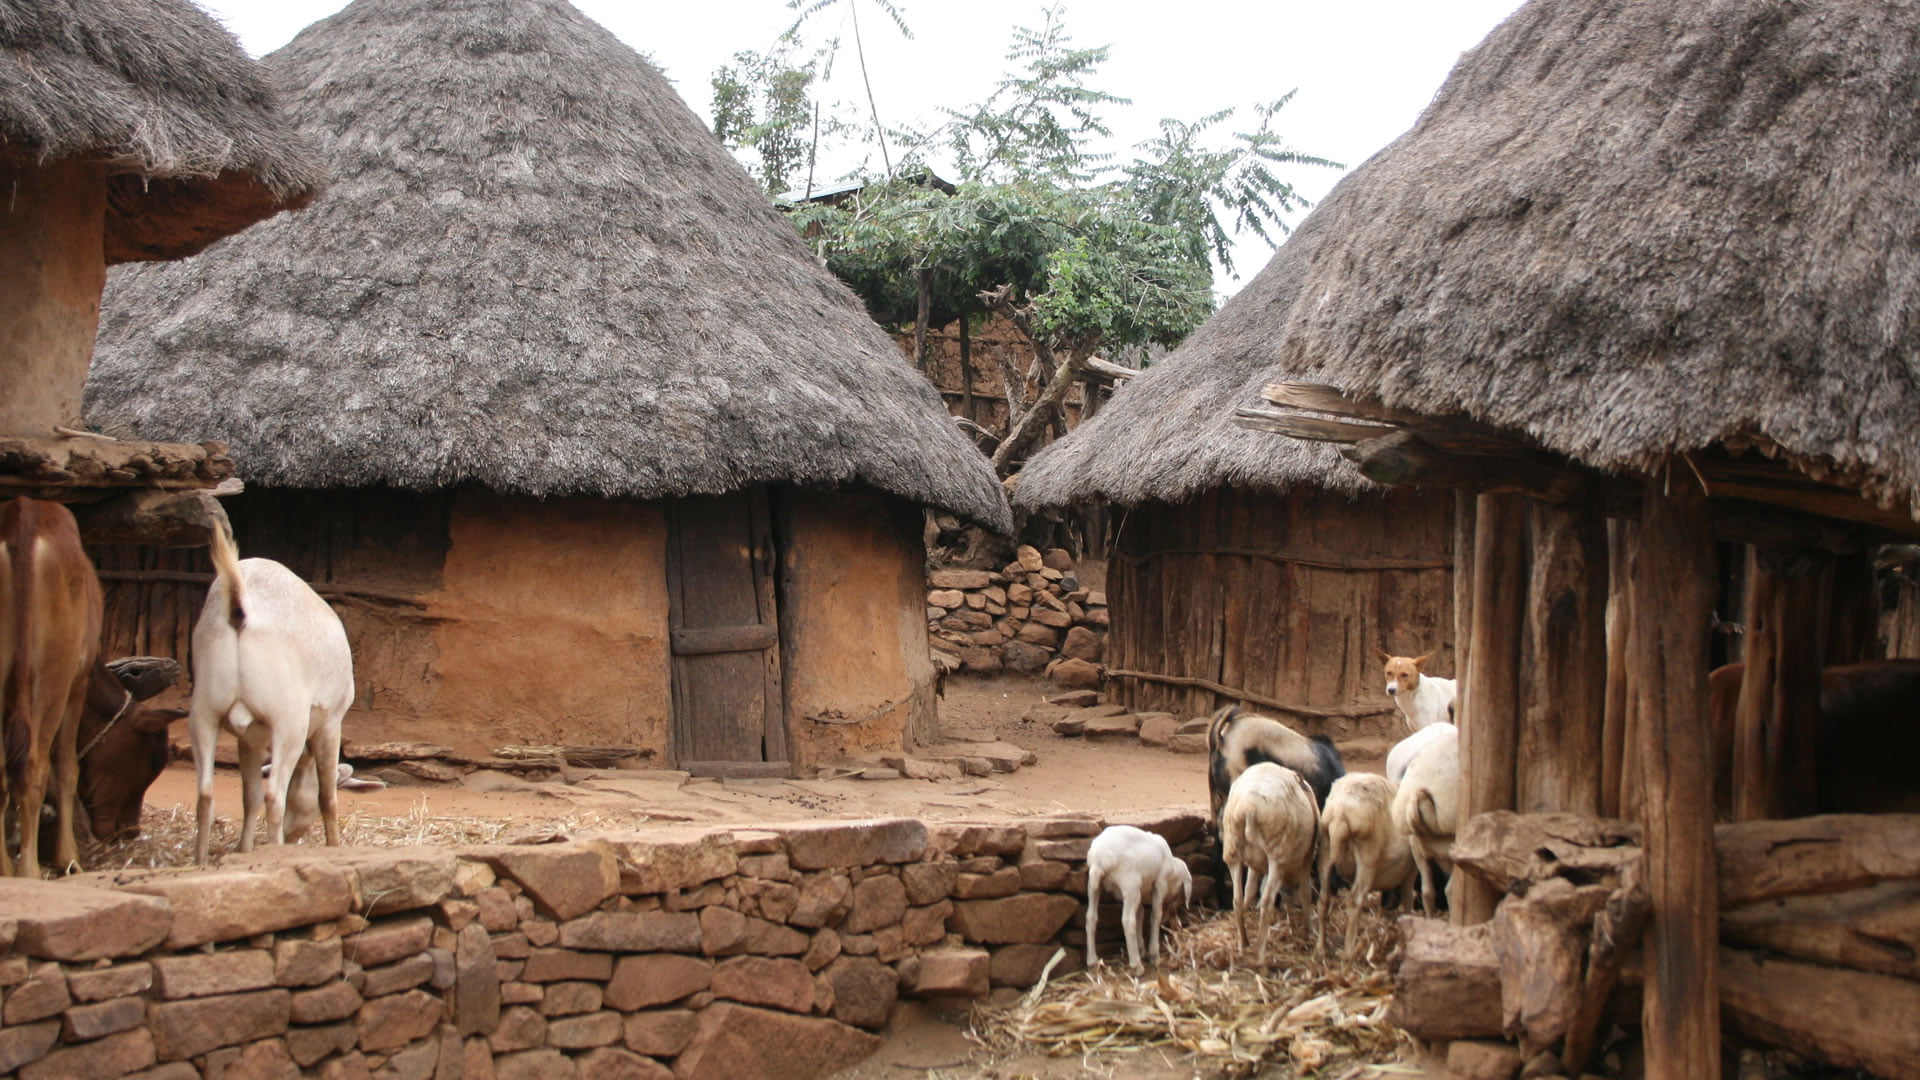 Maisons typiques de la communauté Konso (Ethiopie)